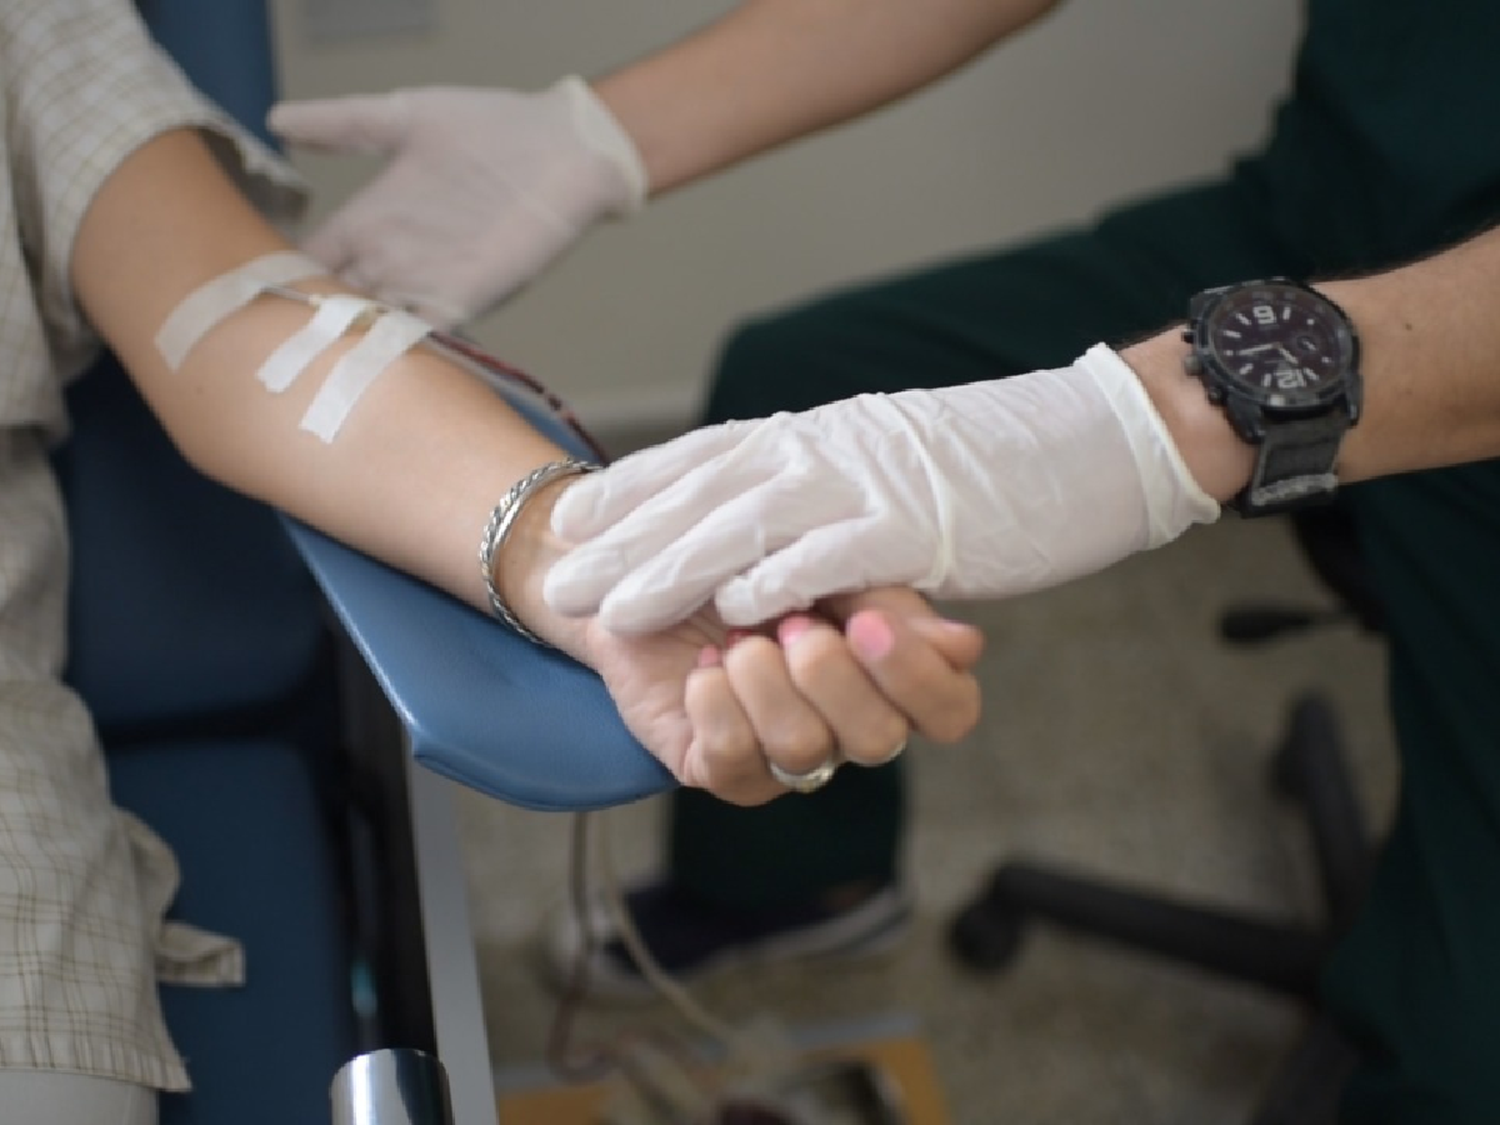 El Hospital Iturraspe convoca a la población a donar sangre en cuarentena